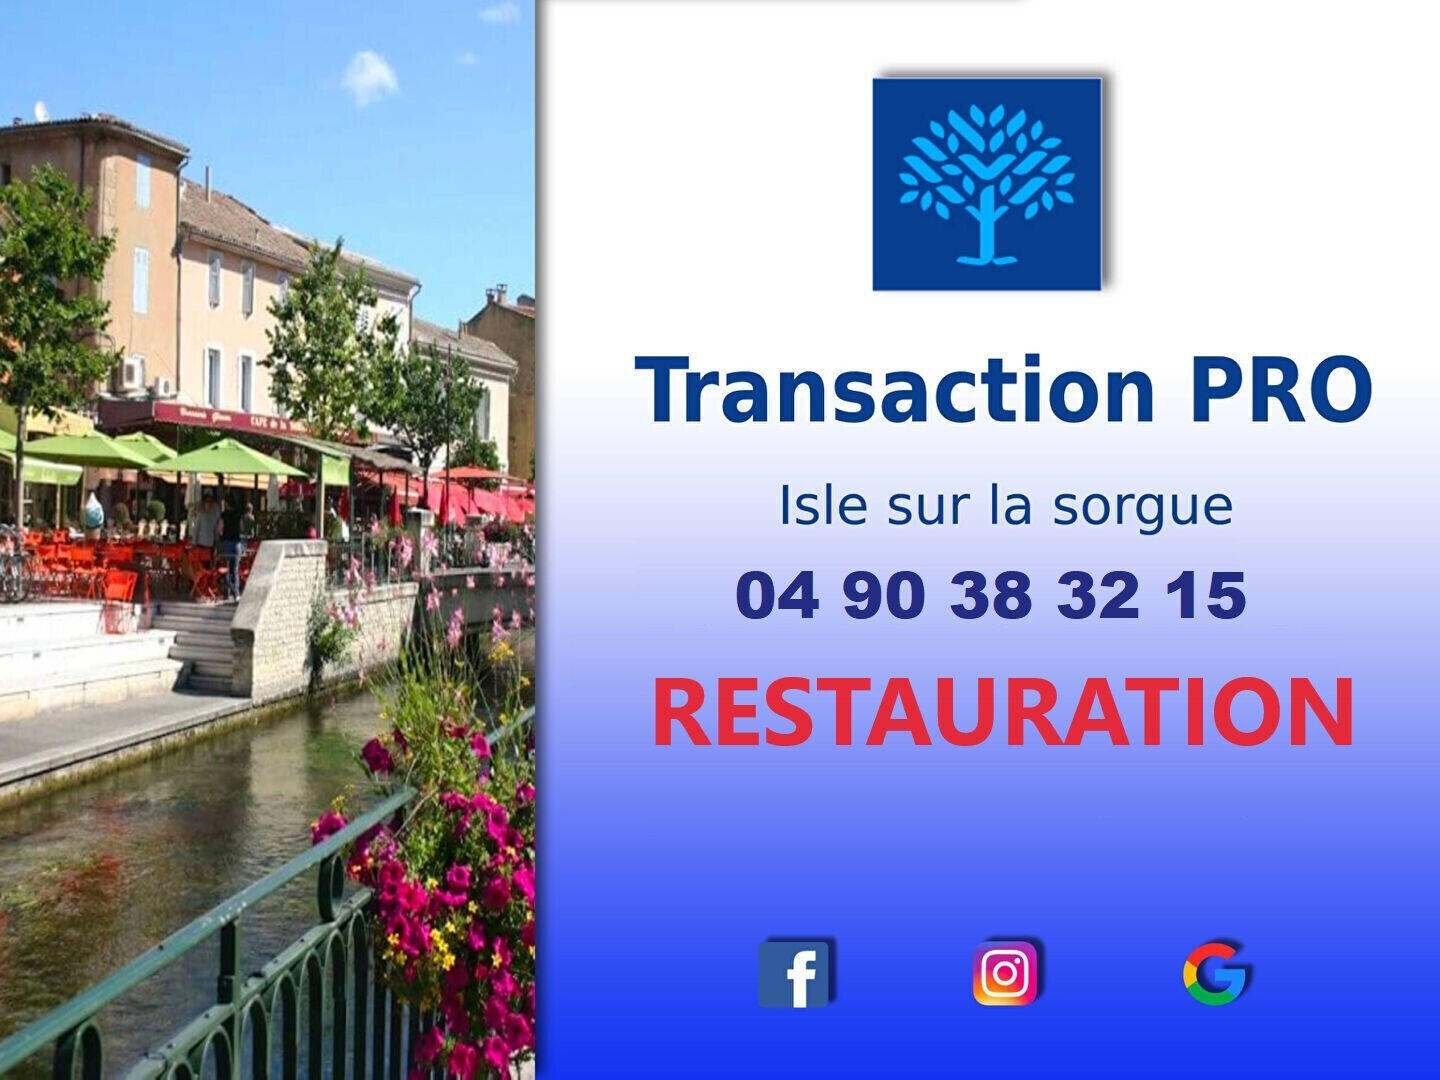 Vente FDC restaurant dans ville proche d'Avignon